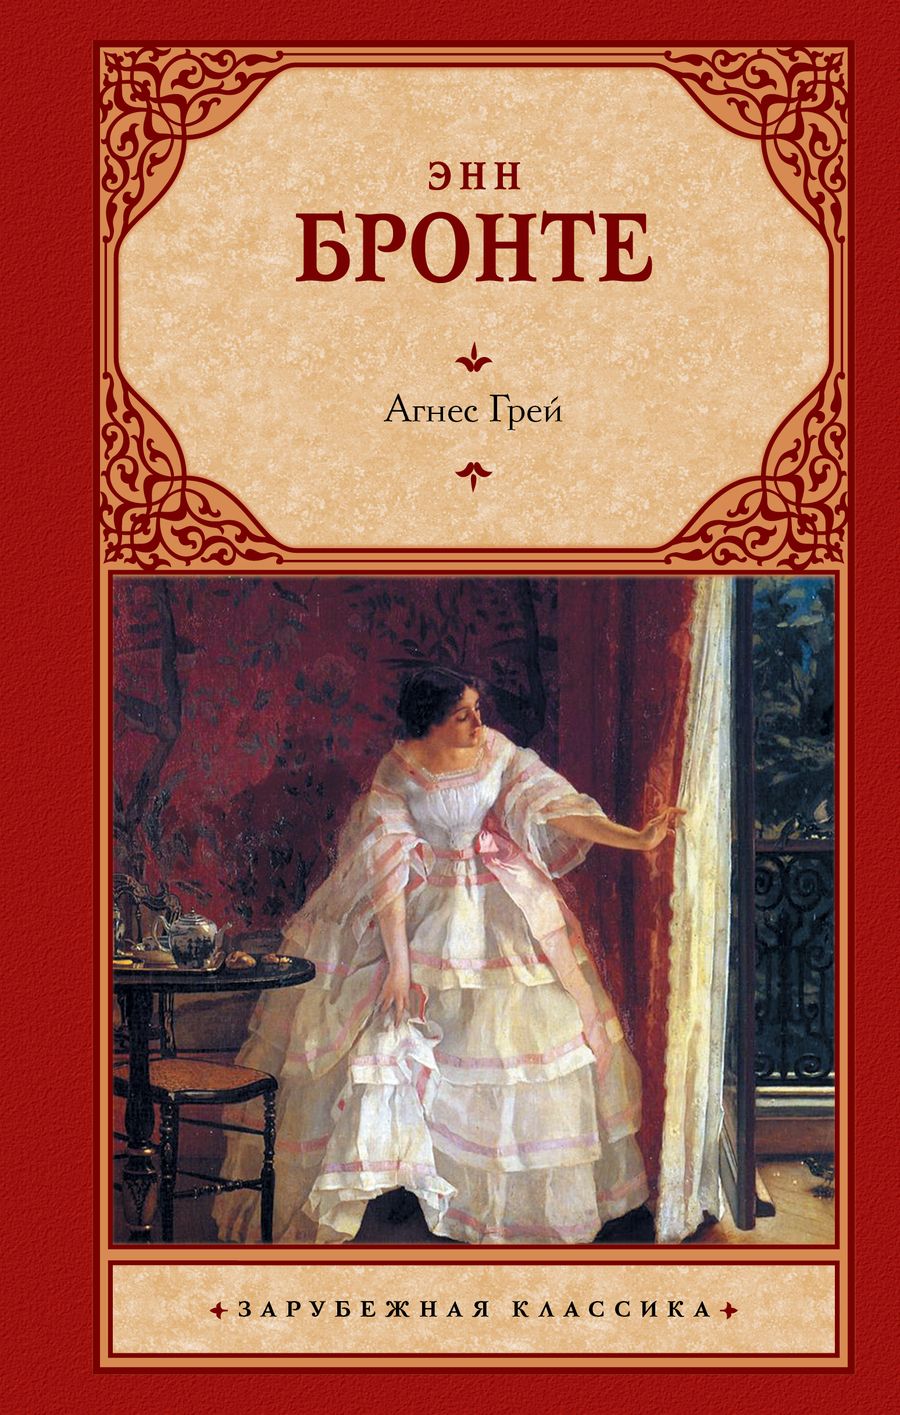 Обложка книги "Бронте: Агнес Грей"